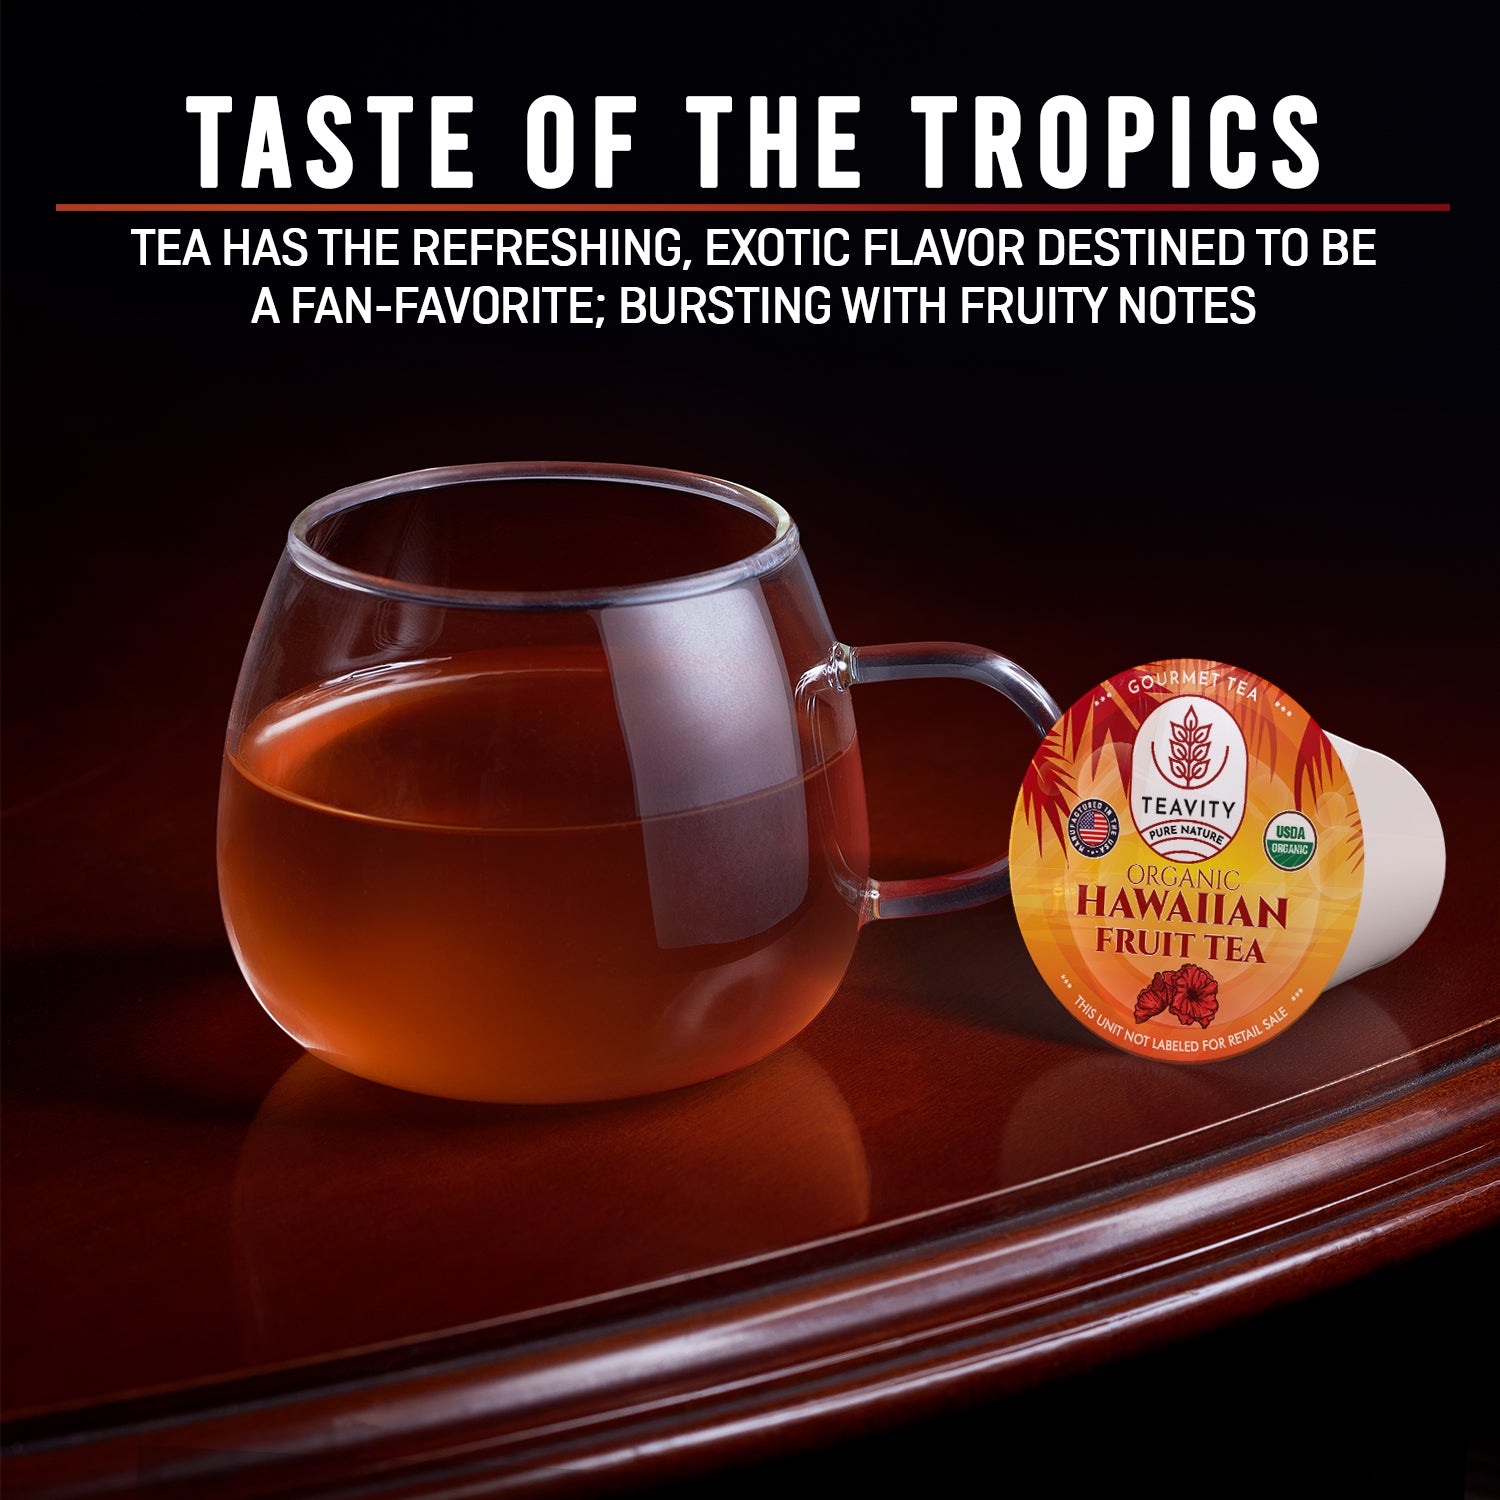 Organic Hawaiian Fruit Tea